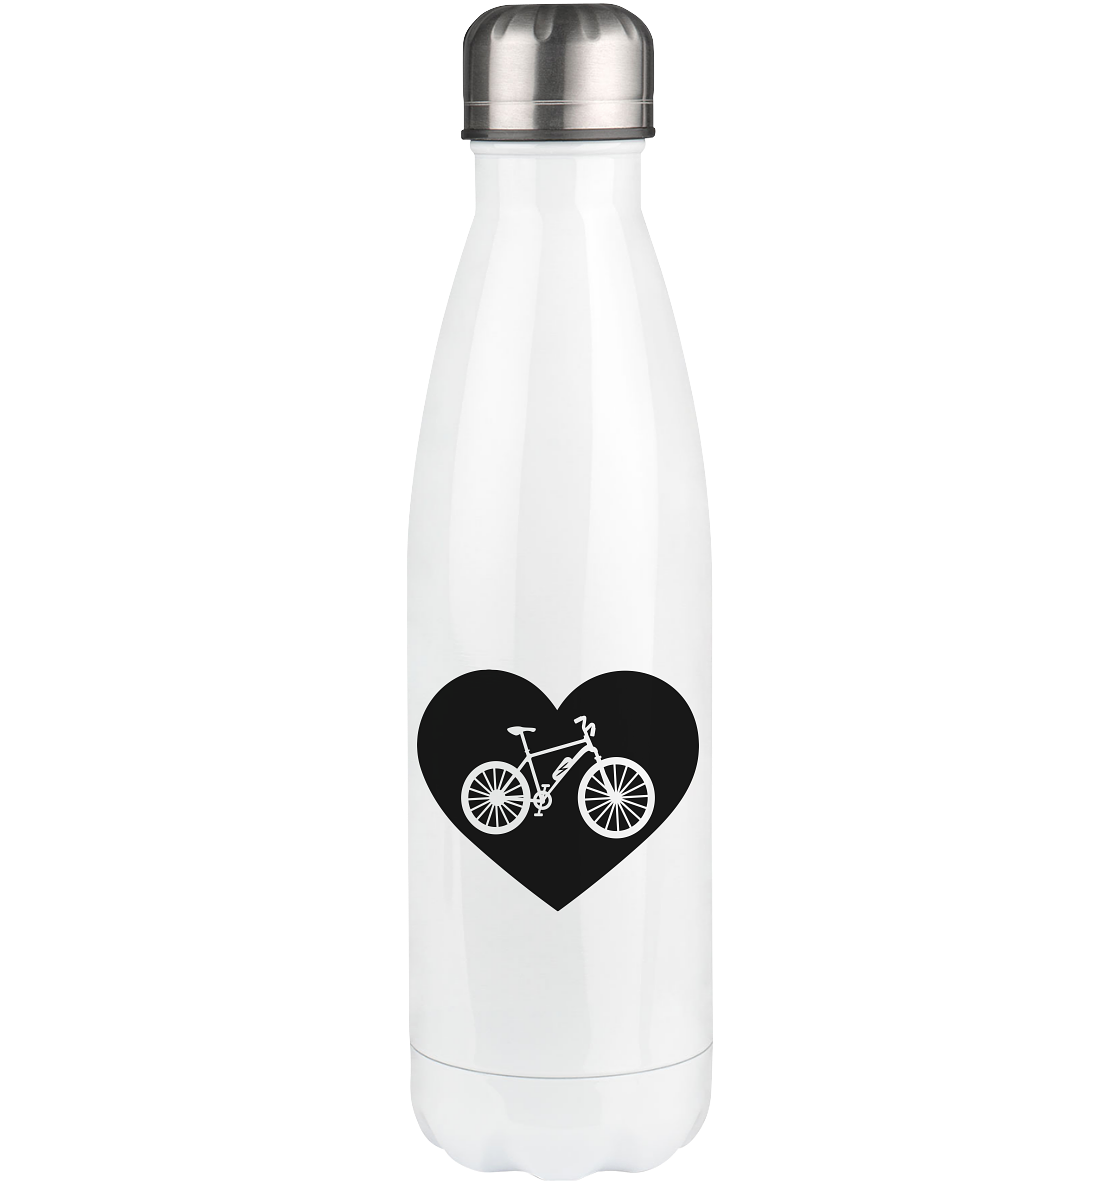 Heart 1 and Ebike - Edelstahl Thermosflasche e-bike 500ml